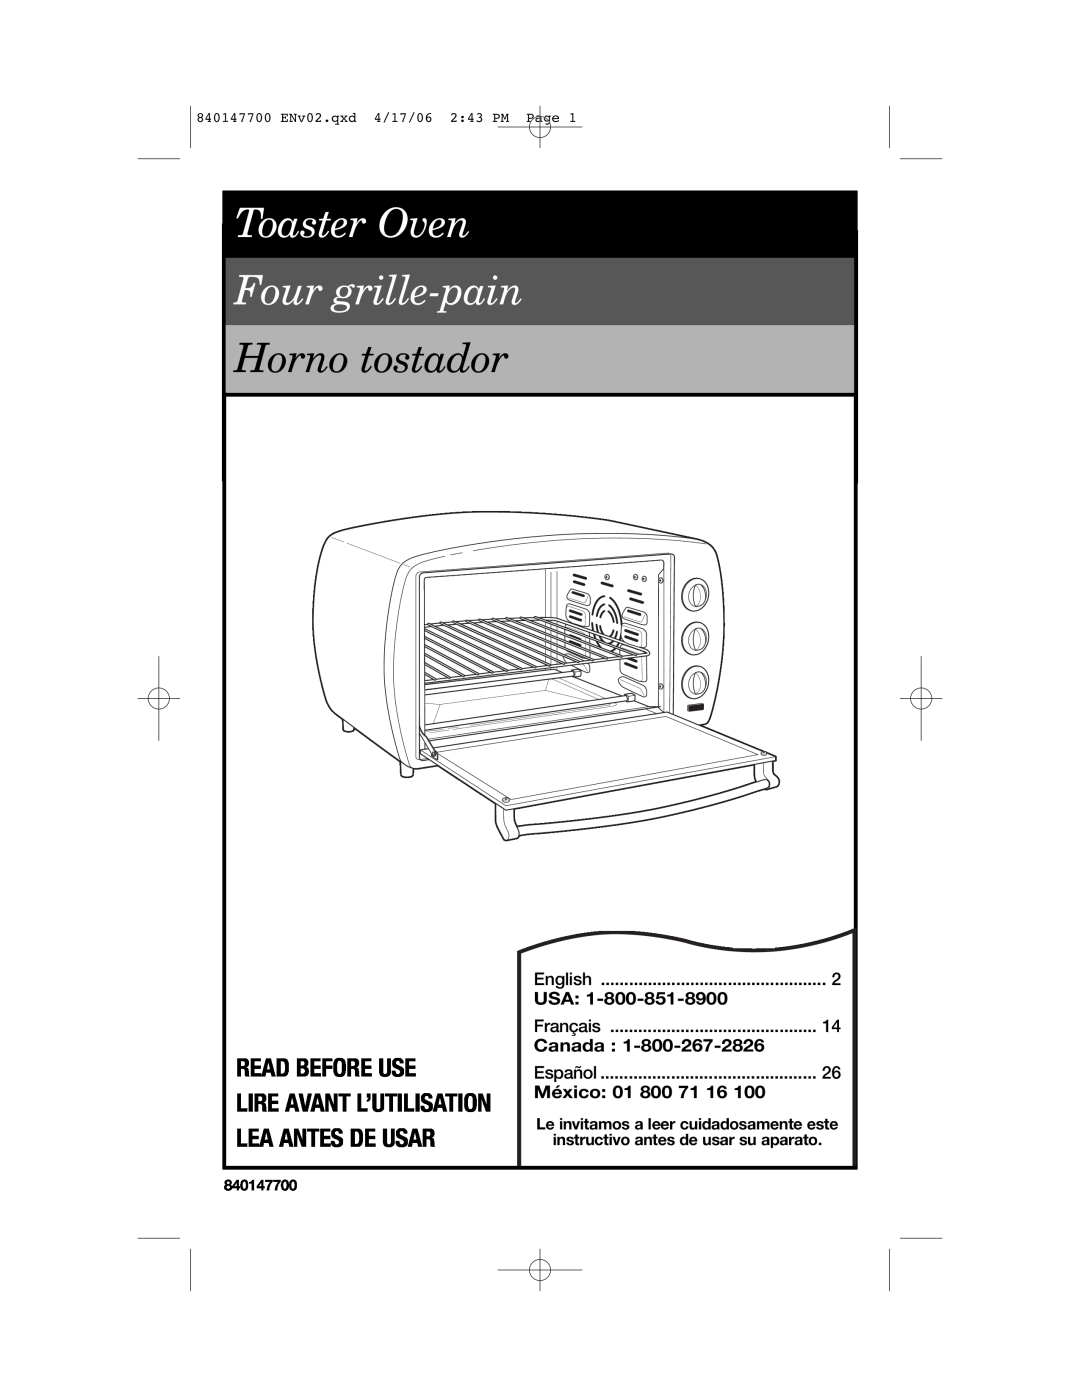 Hamilton Beach 31180 manual Read Before Use, Lire Avant L’Utilisation Lea Antes De Usar, Canada, México, Horno tostador 